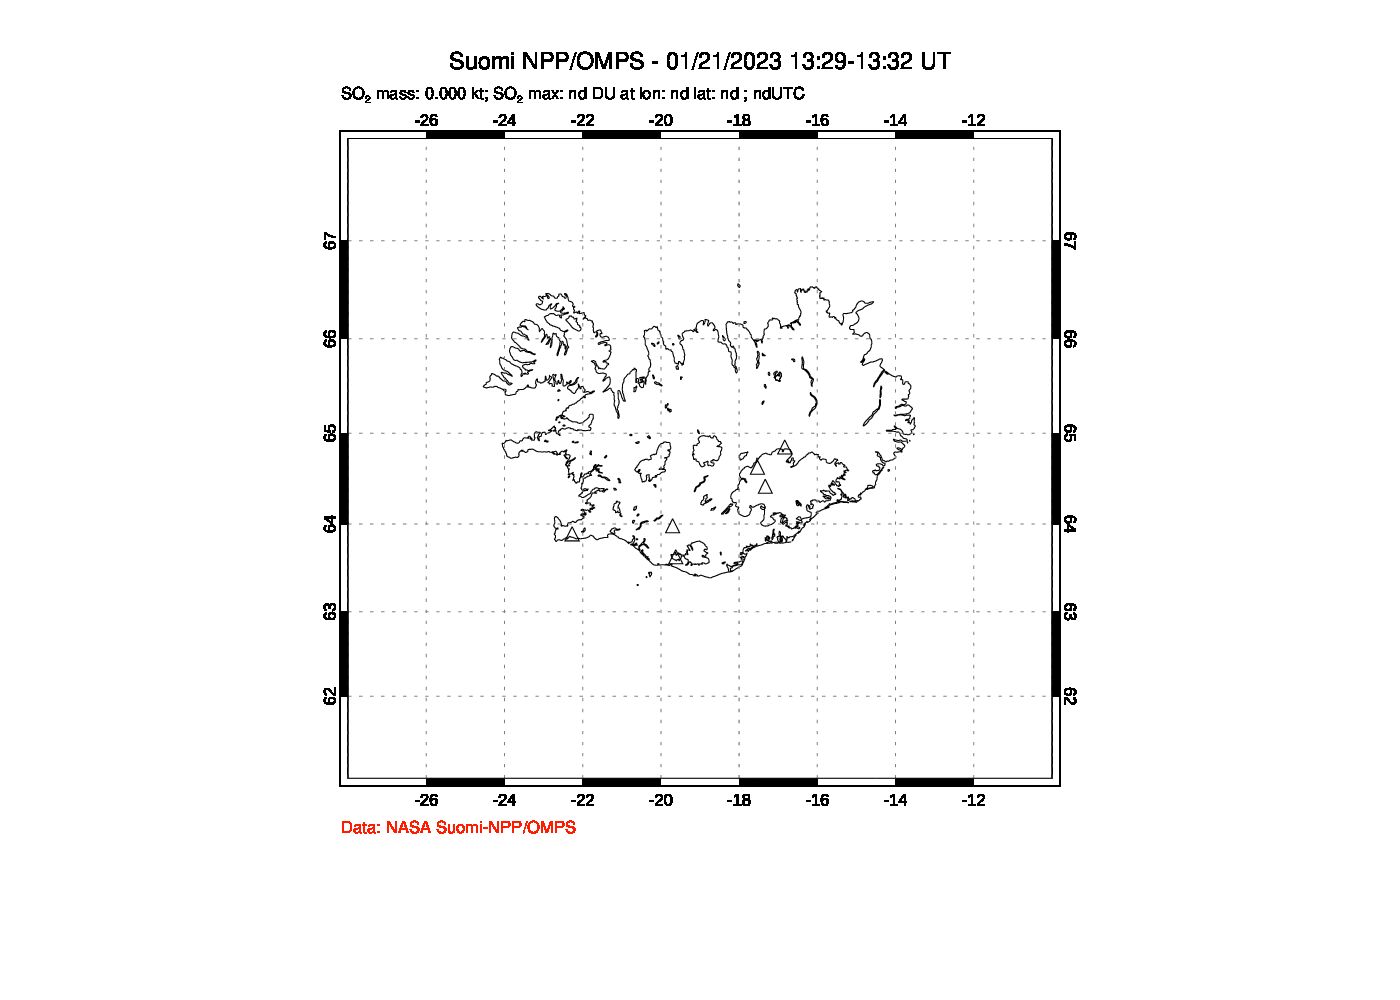 A sulfur dioxide image over Iceland on Jan 21, 2023.